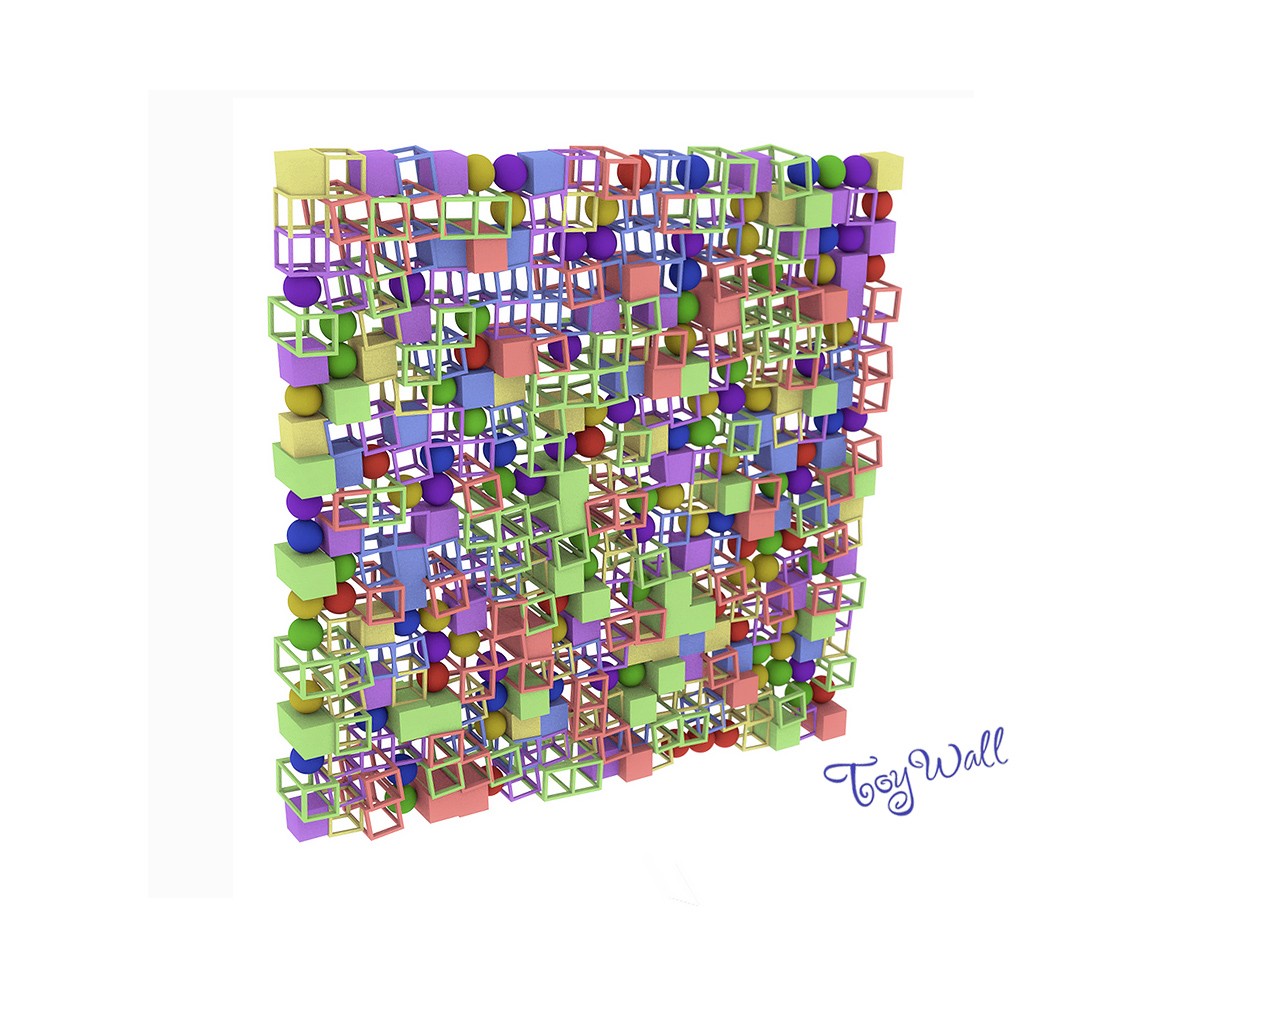 壁纸1280x1024纯数学产物  3D立体分形艺术图案 3D Fractal Art Toy Wall壁纸 分形艺术创作壁纸(三)壁纸 分形艺术创作壁纸(三)图片 分形艺术创作壁纸(三)素材 插画壁纸 插画图库 插画图片素材桌面壁纸